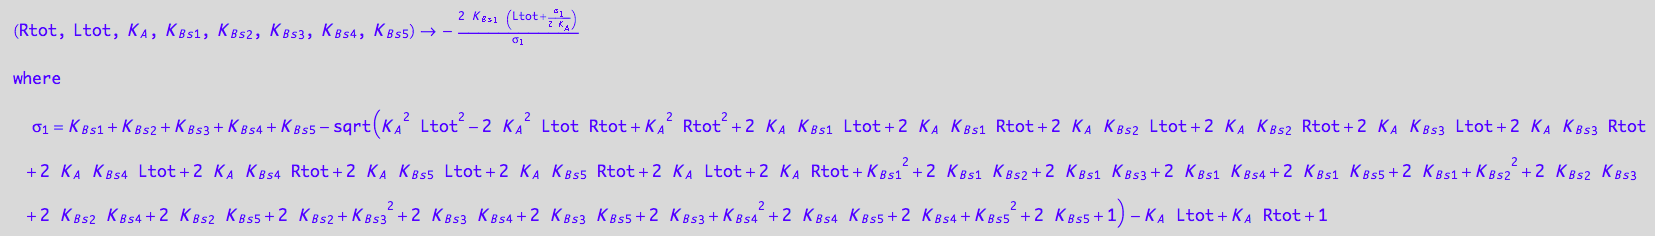 (Rtot, Ltot, K_A, K_B_s_1, K_B_s_2, K_B_s_3, K_B_s_4, K_B_s_5) -> -(2*K_B_s_1*(Ltot + (K_B_s_1 + K_B_s_2 + K_B_s_3 + K_B_s_4 + K_B_s_5 - (K_A^2*Ltot^2 - 2*K_A^2*Ltot*Rtot + K_A^2*Rtot^2 + 2*K_A*K_B_s_1*Ltot + 2*K_A*K_B_s_1*Rtot + 2*K_A*K_B_s_2*Ltot + 2*K_A*K_B_s_2*Rtot + 2*K_A*K_B_s_3*Ltot + 2*K_A*K_B_s_3*Rtot + 2*K_A*K_B_s_4*Ltot + 2*K_A*K_B_s_4*Rtot + 2*K_A*K_B_s_5*Ltot + 2*K_A*K_B_s_5*Rtot + 2*K_A*Ltot + 2*K_A*Rtot + K_B_s_1^2 + 2*K_B_s_1*K_B_s_2 + 2*K_B_s_1*K_B_s_3 + 2*K_B_s_1*K_B_s_4 + 2*K_B_s_1*K_B_s_5 + 2*K_B_s_1 + K_B_s_2^2 + 2*K_B_s_2*K_B_s_3 + 2*K_B_s_2*K_B_s_4 + 2*K_B_s_2*K_B_s_5 + 2*K_B_s_2 + K_B_s_3^2 + 2*K_B_s_3*K_B_s_4 + 2*K_B_s_3*K_B_s_5 + 2*K_B_s_3 + K_B_s_4^2 + 2*K_B_s_4*K_B_s_5 + 2*K_B_s_4 + K_B_s_5^2 + 2*K_B_s_5 + 1)^(1/2) - K_A*Ltot + K_A*Rtot + 1)/(2*K_A)))/(K_B_s_1 + K_B_s_2 + K_B_s_3 + K_B_s_4 + K_B_s_5 - (K_A^2*Ltot^2 - 2*K_A^2*Ltot*Rtot + K_A^2*Rtot^2 + 2*K_A*K_B_s_1*Ltot + 2*K_A*K_B_s_1*Rtot + 2*K_A*K_B_s_2*Ltot + 2*K_A*K_B_s_2*Rtot + 2*K_A*K_B_s_3*Ltot + 2*K_A*K_B_s_3*Rtot + 2*K_A*K_B_s_4*Ltot + 2*K_A*K_B_s_4*Rtot + 2*K_A*K_B_s_5*Ltot + 2*K_A*K_B_s_5*Rtot + 2*K_A*Ltot + 2*K_A*Rtot + K_B_s_1^2 + 2*K_B_s_1*K_B_s_2 + 2*K_B_s_1*K_B_s_3 + 2*K_B_s_1*K_B_s_4 + 2*K_B_s_1*K_B_s_5 + 2*K_B_s_1 + K_B_s_2^2 + 2*K_B_s_2*K_B_s_3 + 2*K_B_s_2*K_B_s_4 + 2*K_B_s_2*K_B_s_5 + 2*K_B_s_2 + K_B_s_3^2 + 2*K_B_s_3*K_B_s_4 + 2*K_B_s_3*K_B_s_5 + 2*K_B_s_3 + K_B_s_4^2 + 2*K_B_s_4*K_B_s_5 + 2*K_B_s_4 + K_B_s_5^2 + 2*K_B_s_5 + 1)^(1/2) - K_A*Ltot + K_A*Rtot + 1)